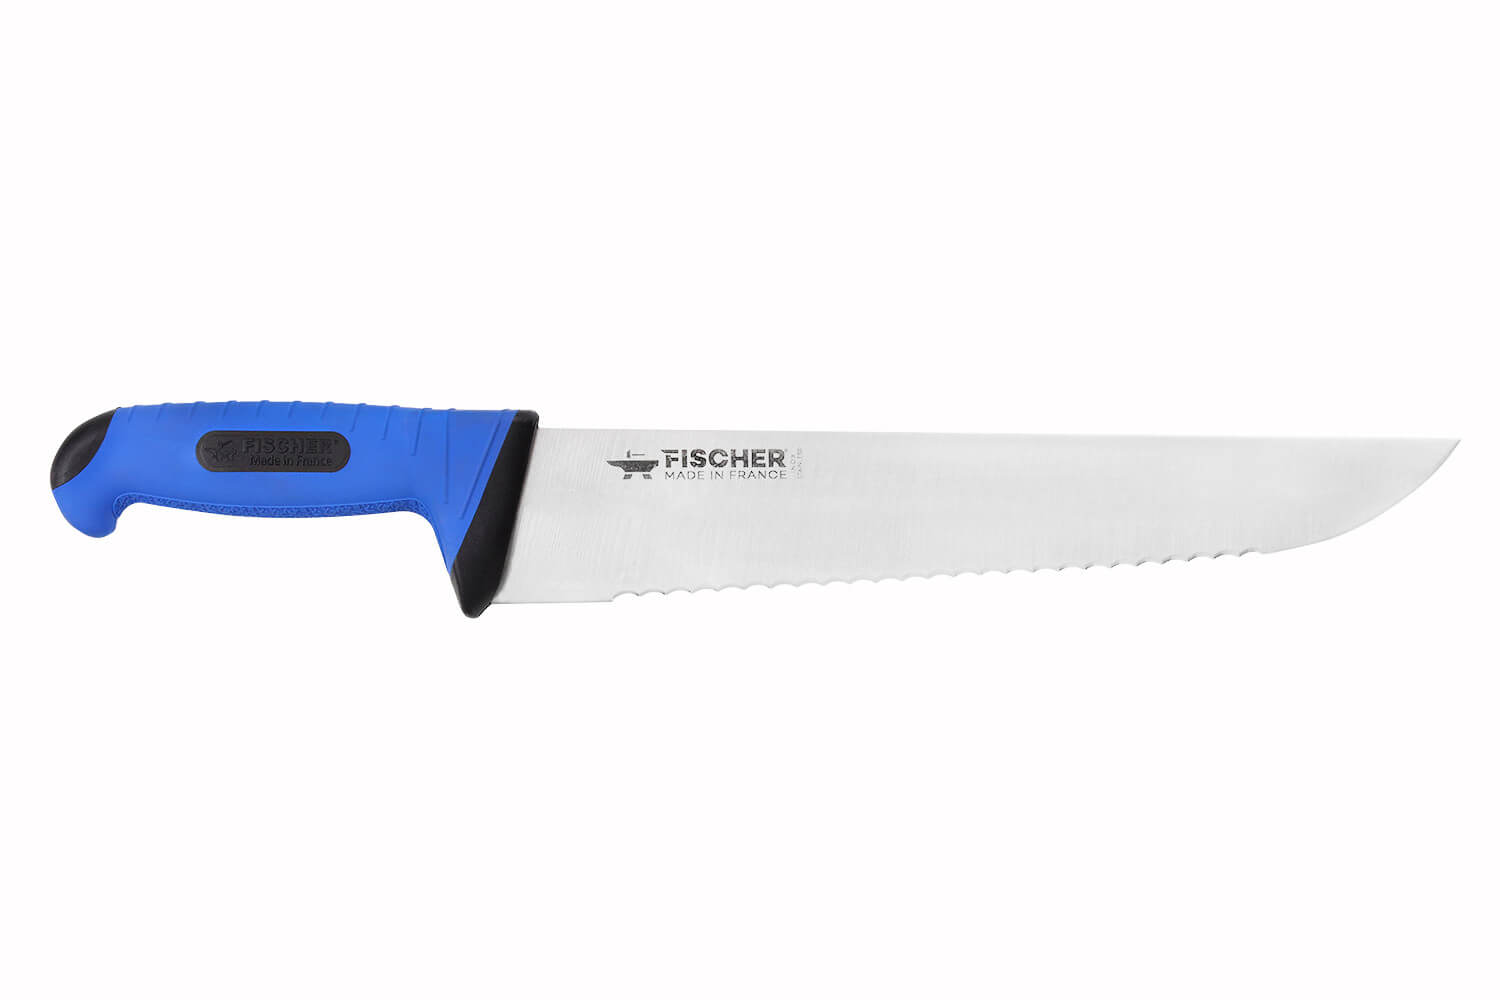 Les produits   Coutellerie - Couteau de boucher professionnel  lame acier 35cm DEGLON